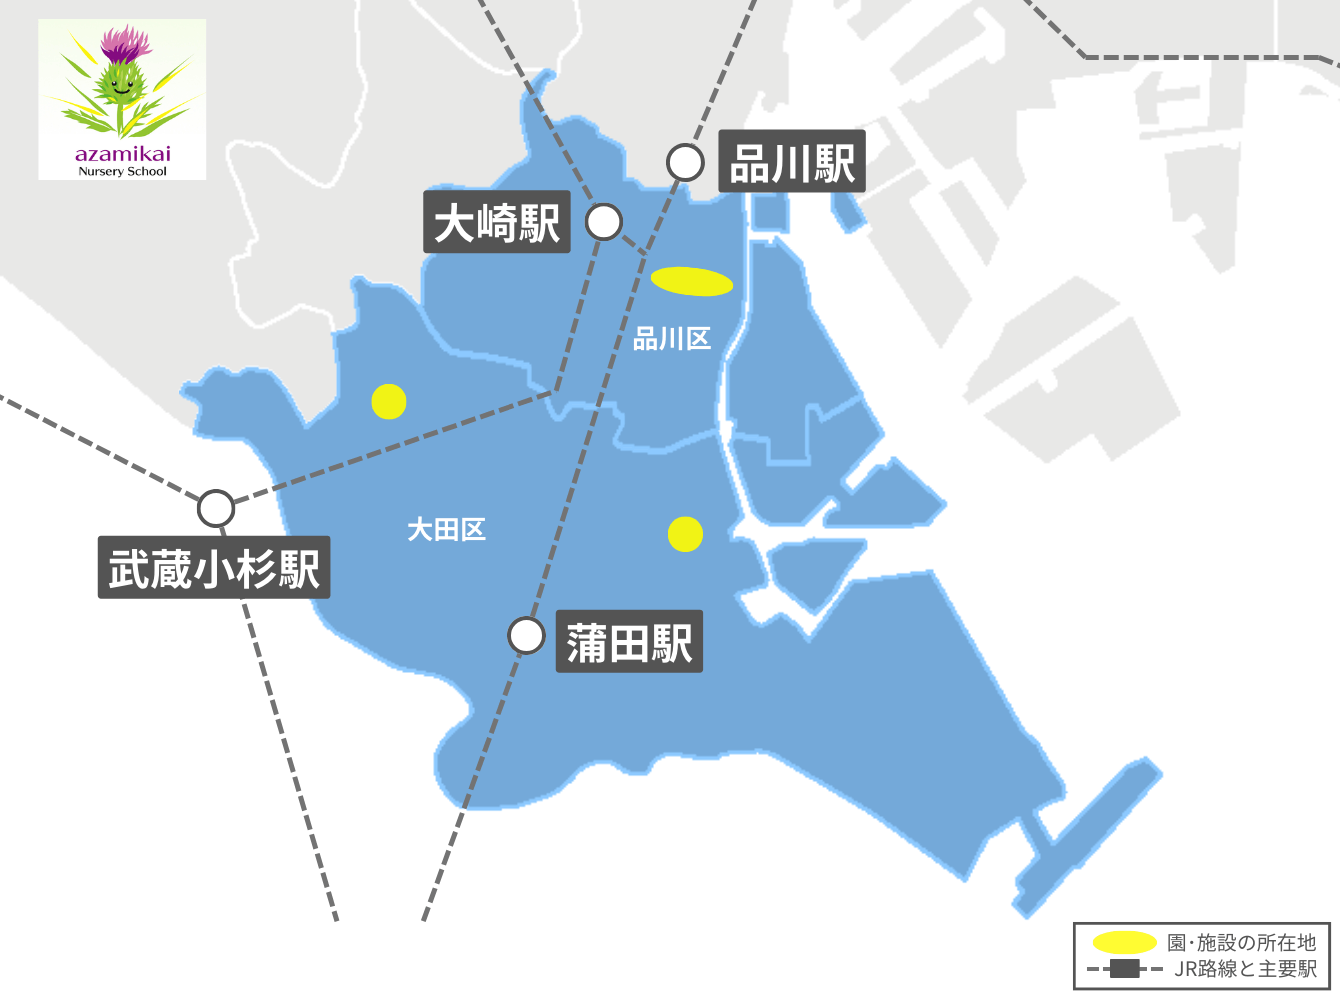 社会福祉法人あざみ会の東京23区の園・施設